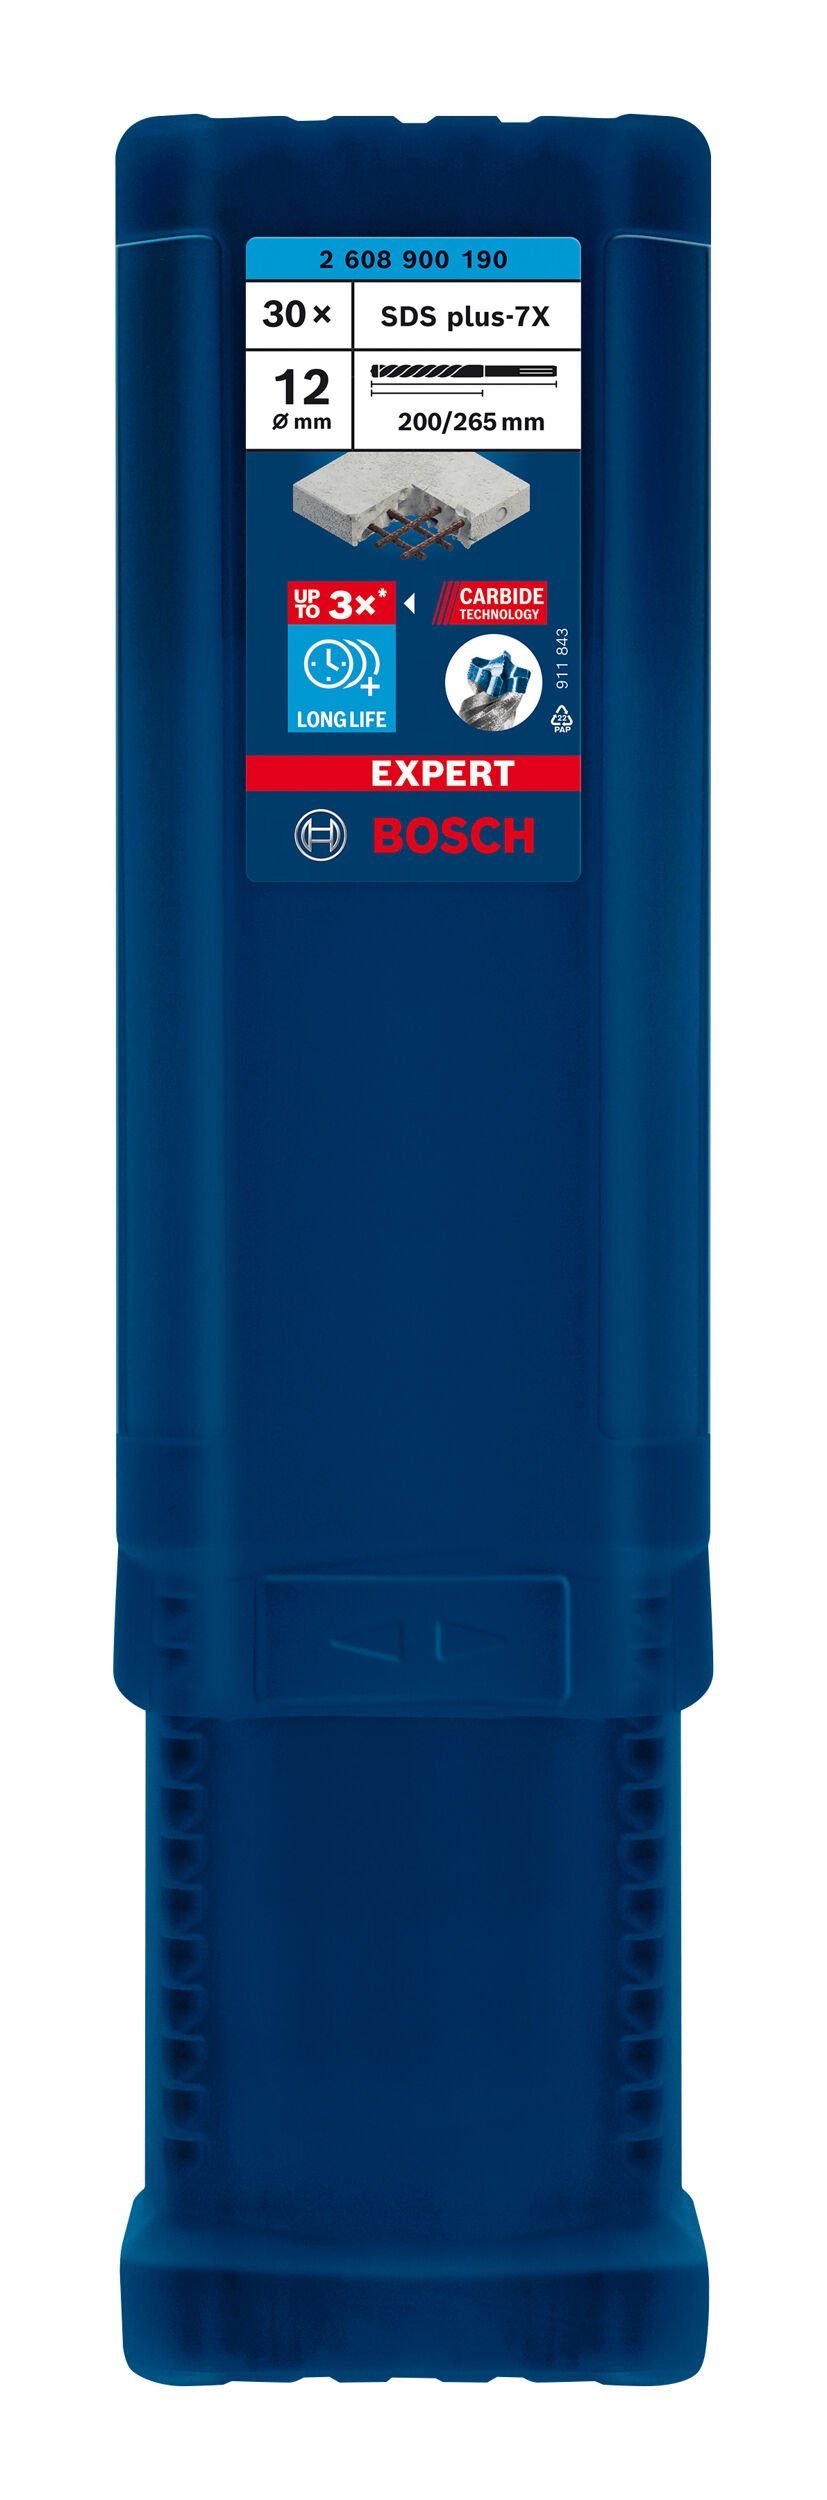 BOSCH Universalbohrer Expert SDS plus-7X, 30er-Pack - 200 266 (30 - Hammerbohrer x mm Stück), 12 x